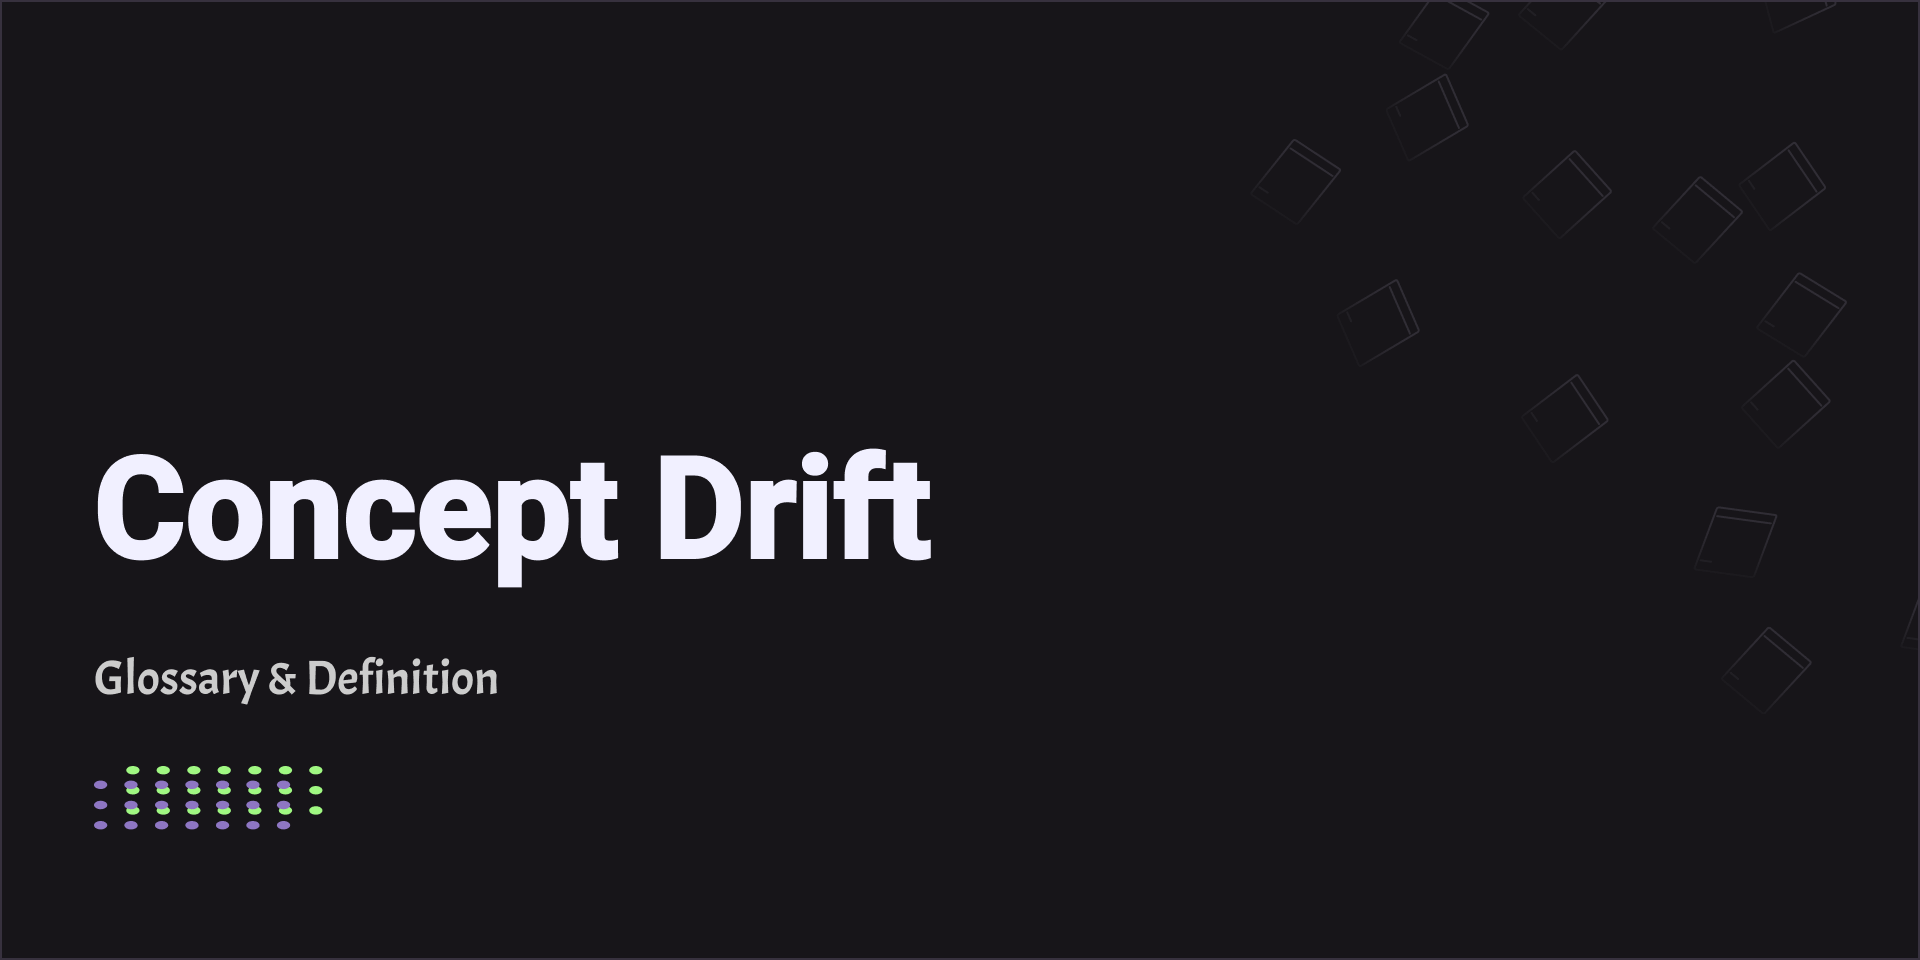 Concept Drift